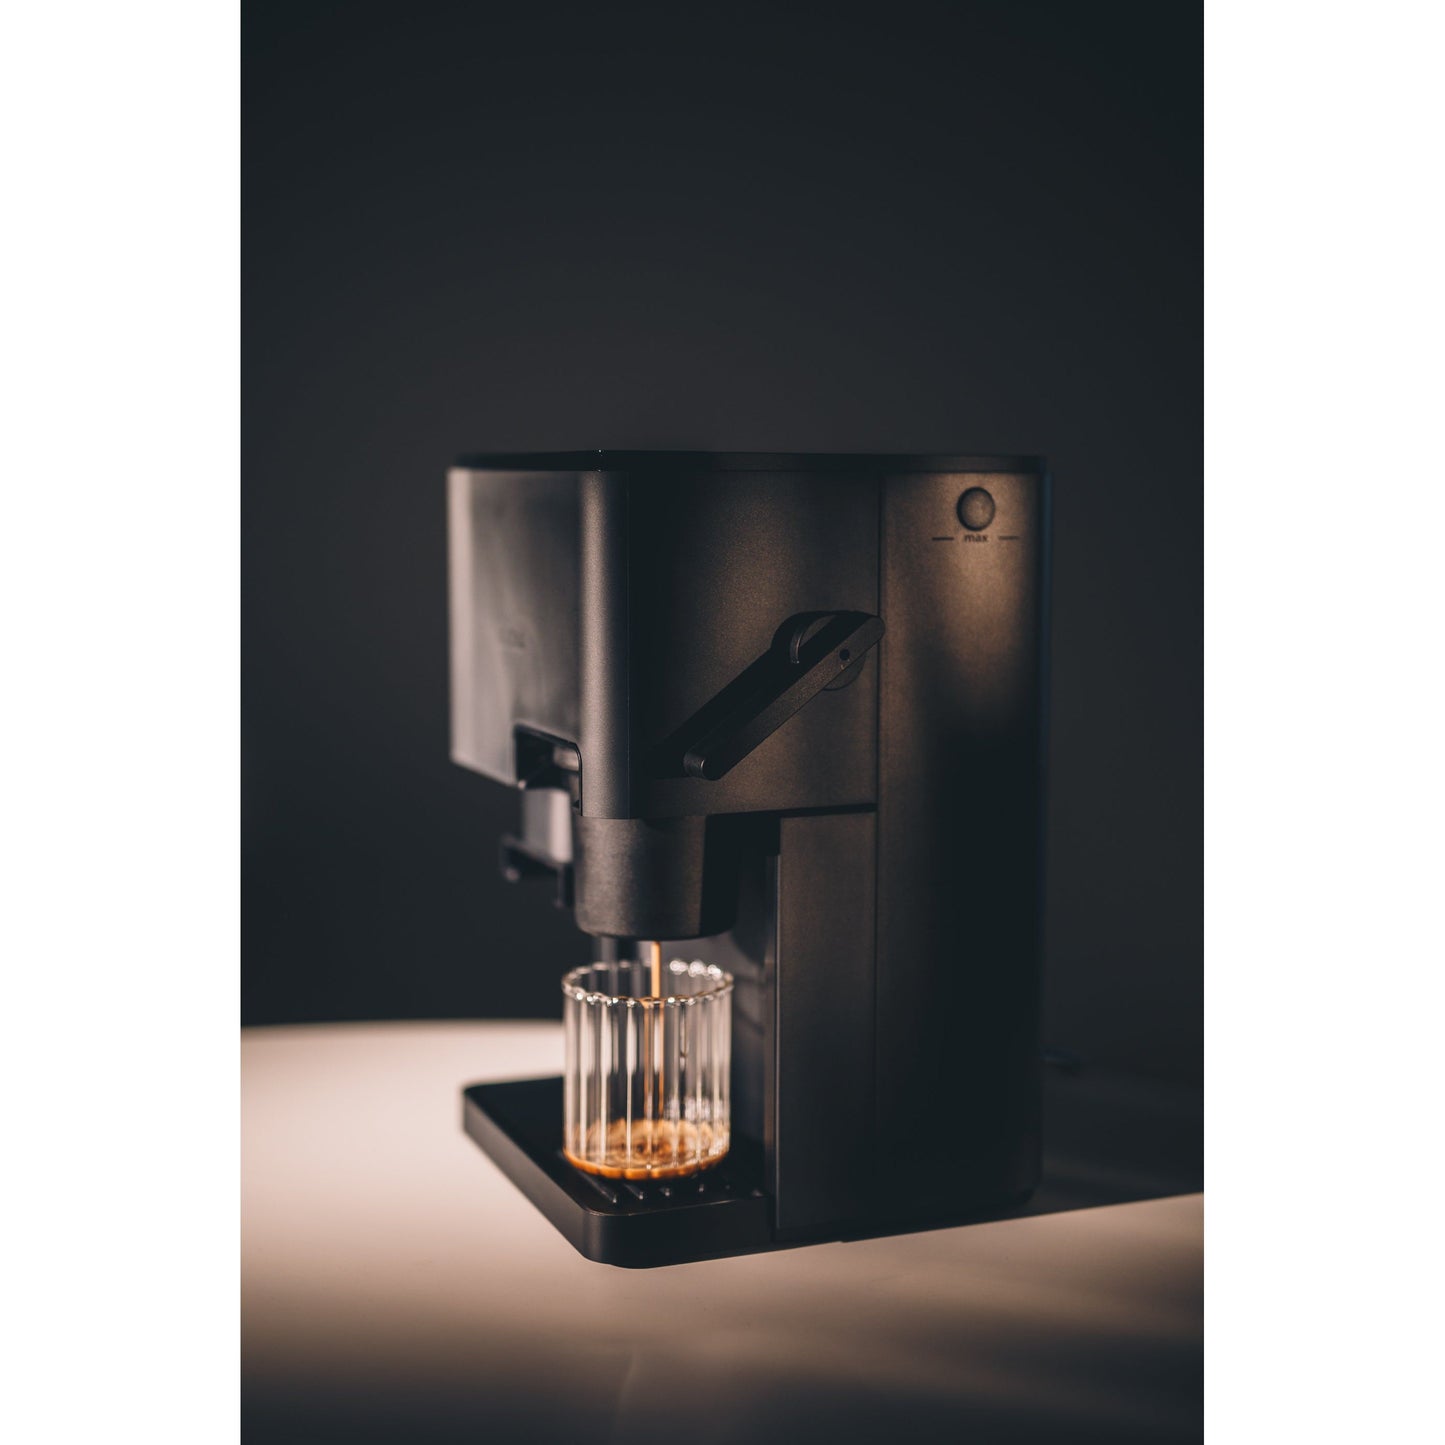 Kaffee in höhster Qualität: Der Nivona Cube 4106 mit bis zu 15 bar Pumpendruck 